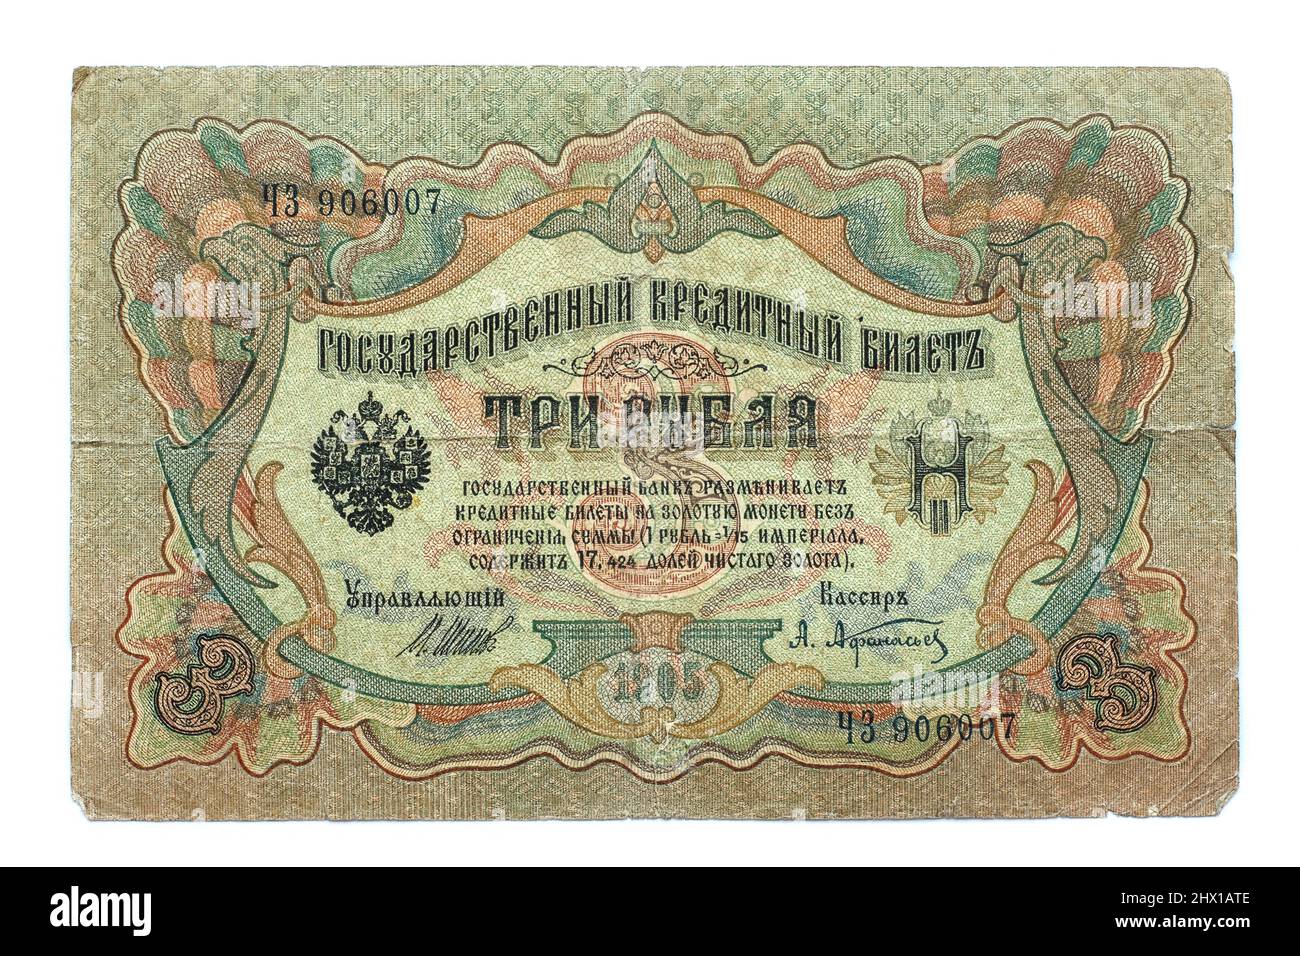 NOVOSIBIRSK, RUSSIA - 9 gennaio 2018: Vecchia banconota russa con un valore nominale di 3 rubli, circa 1905 Foto Stock